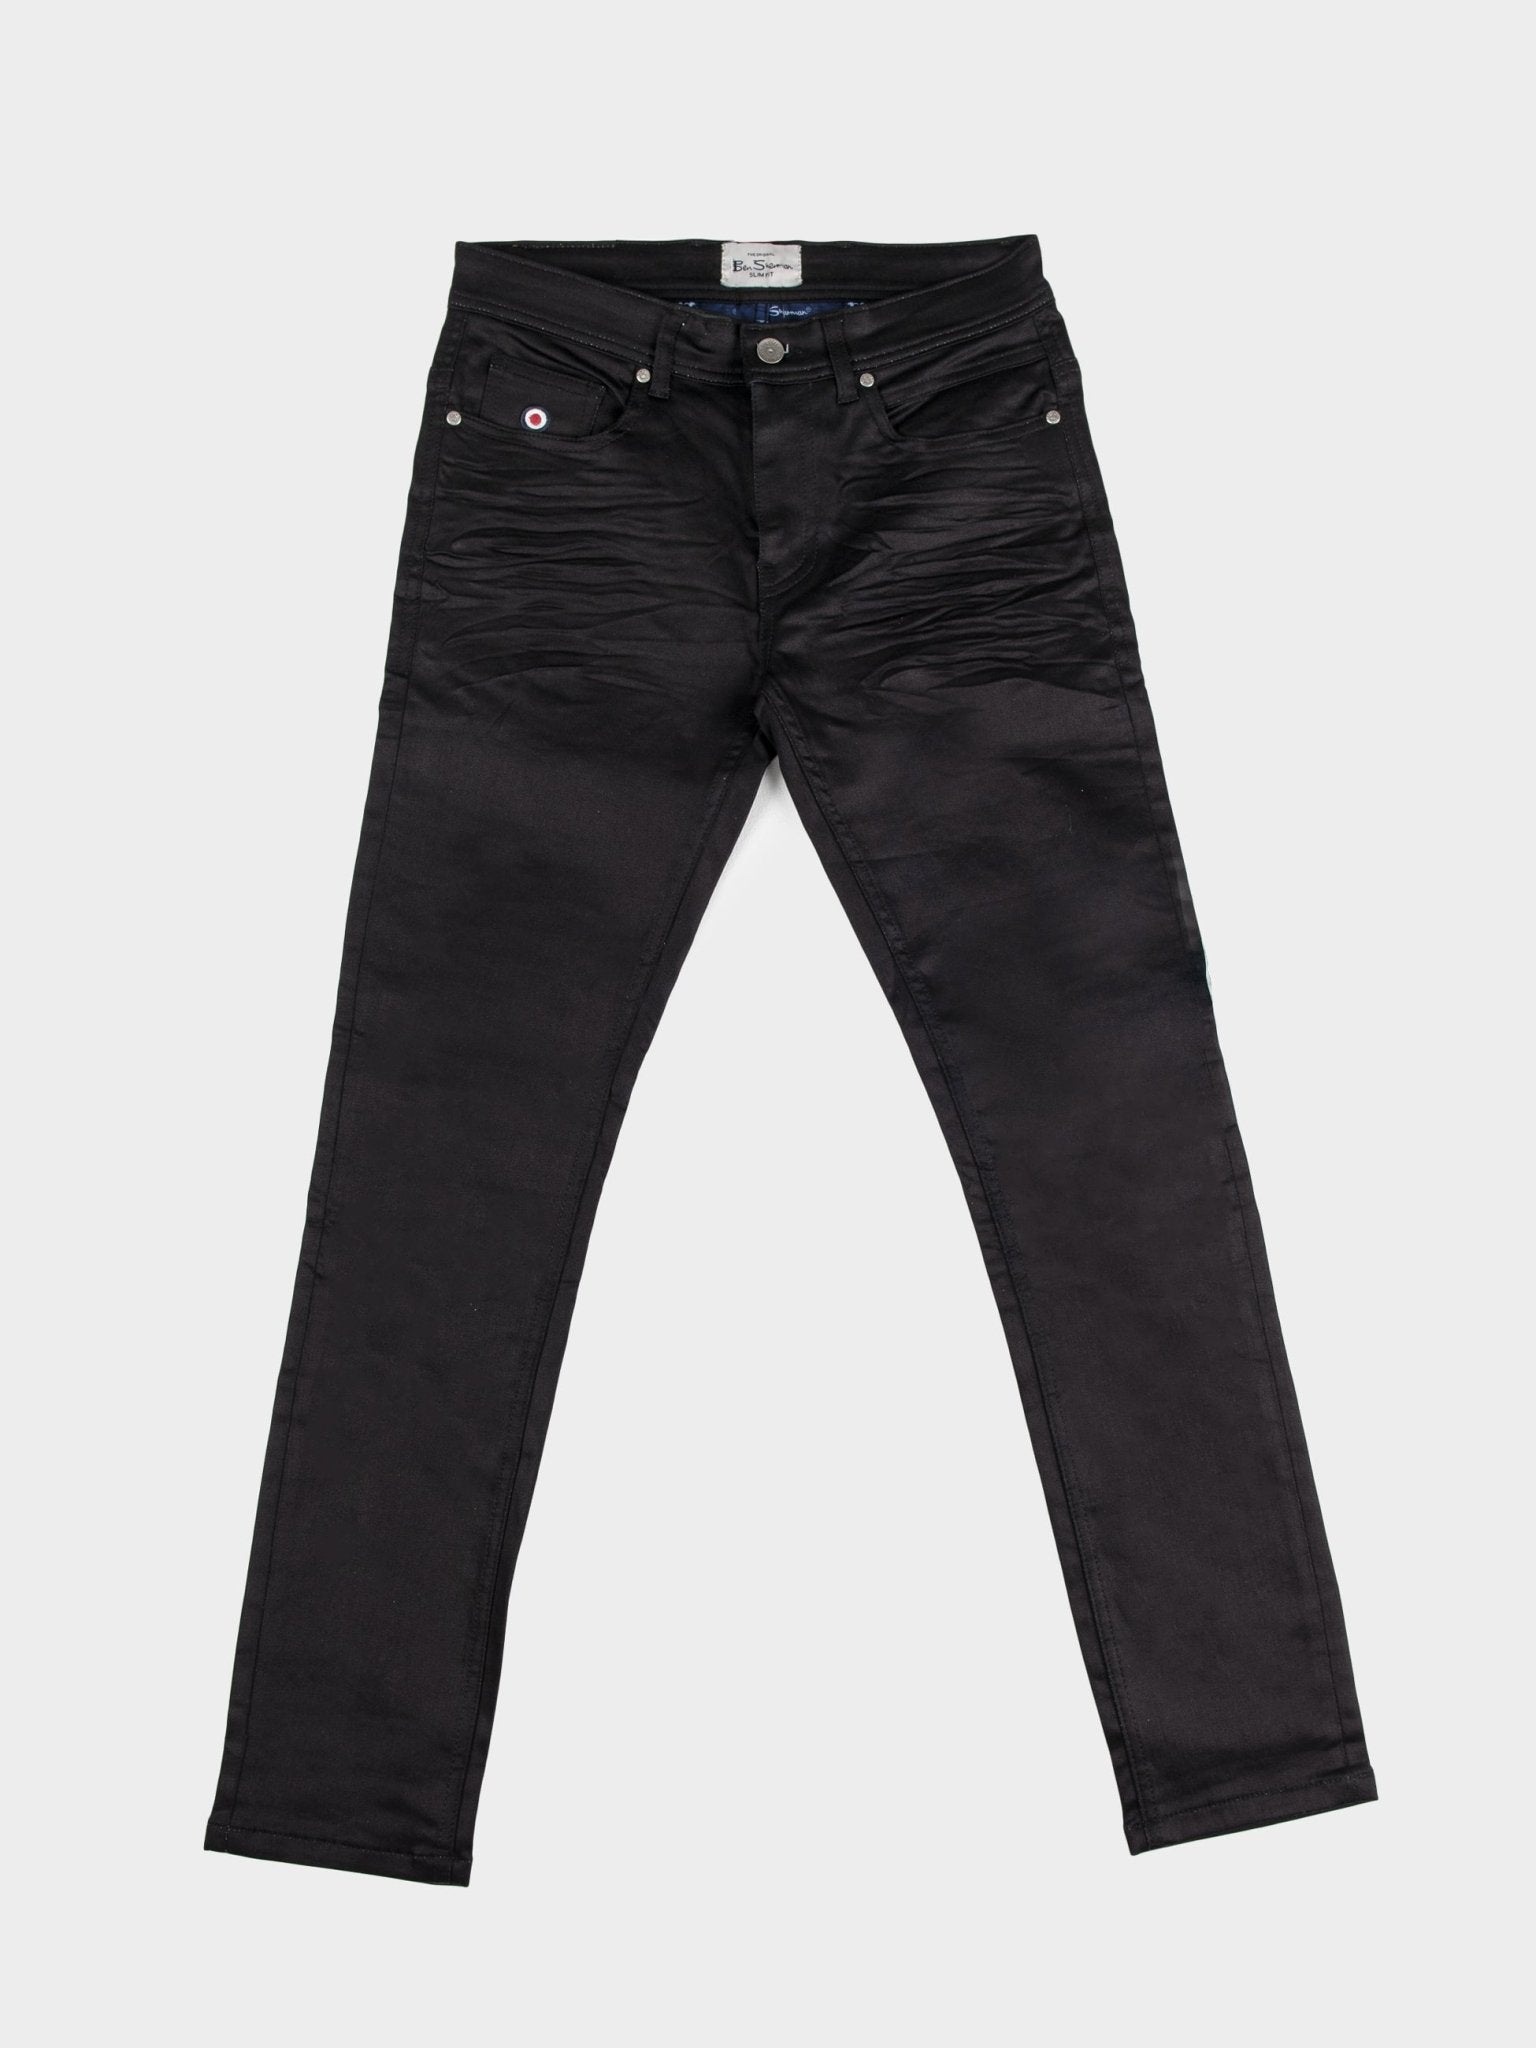 Coated Skinny High Jeans - Black - Ladies | H&M IN